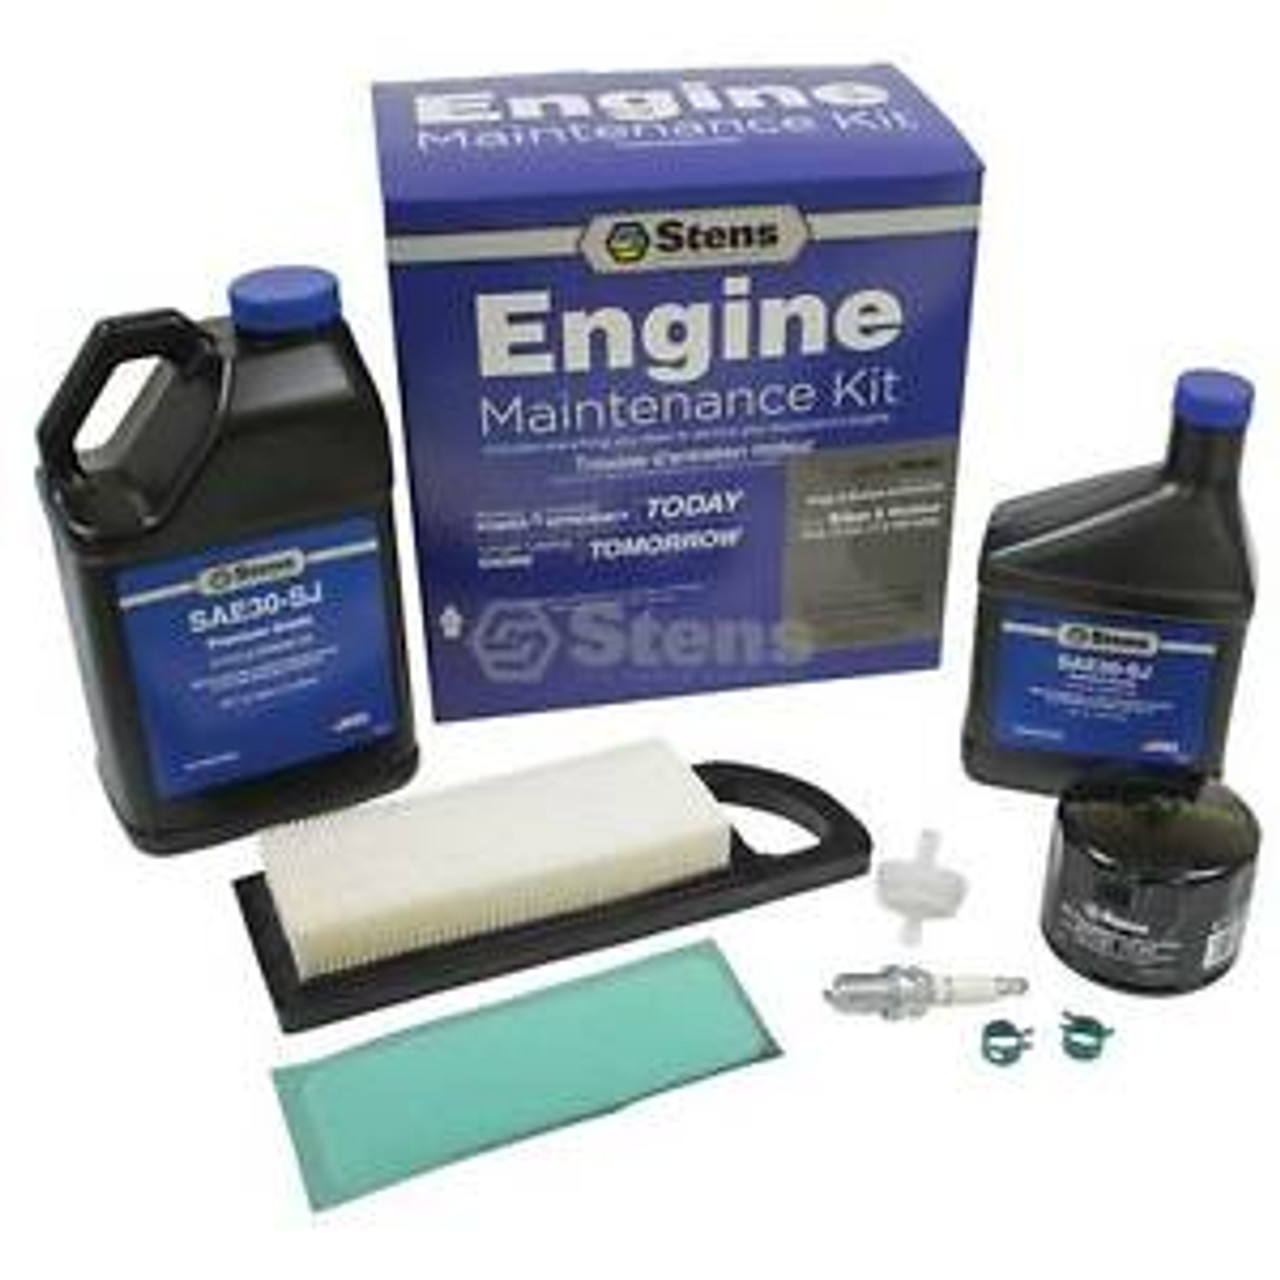 Engine Maintenance Kit 785-521